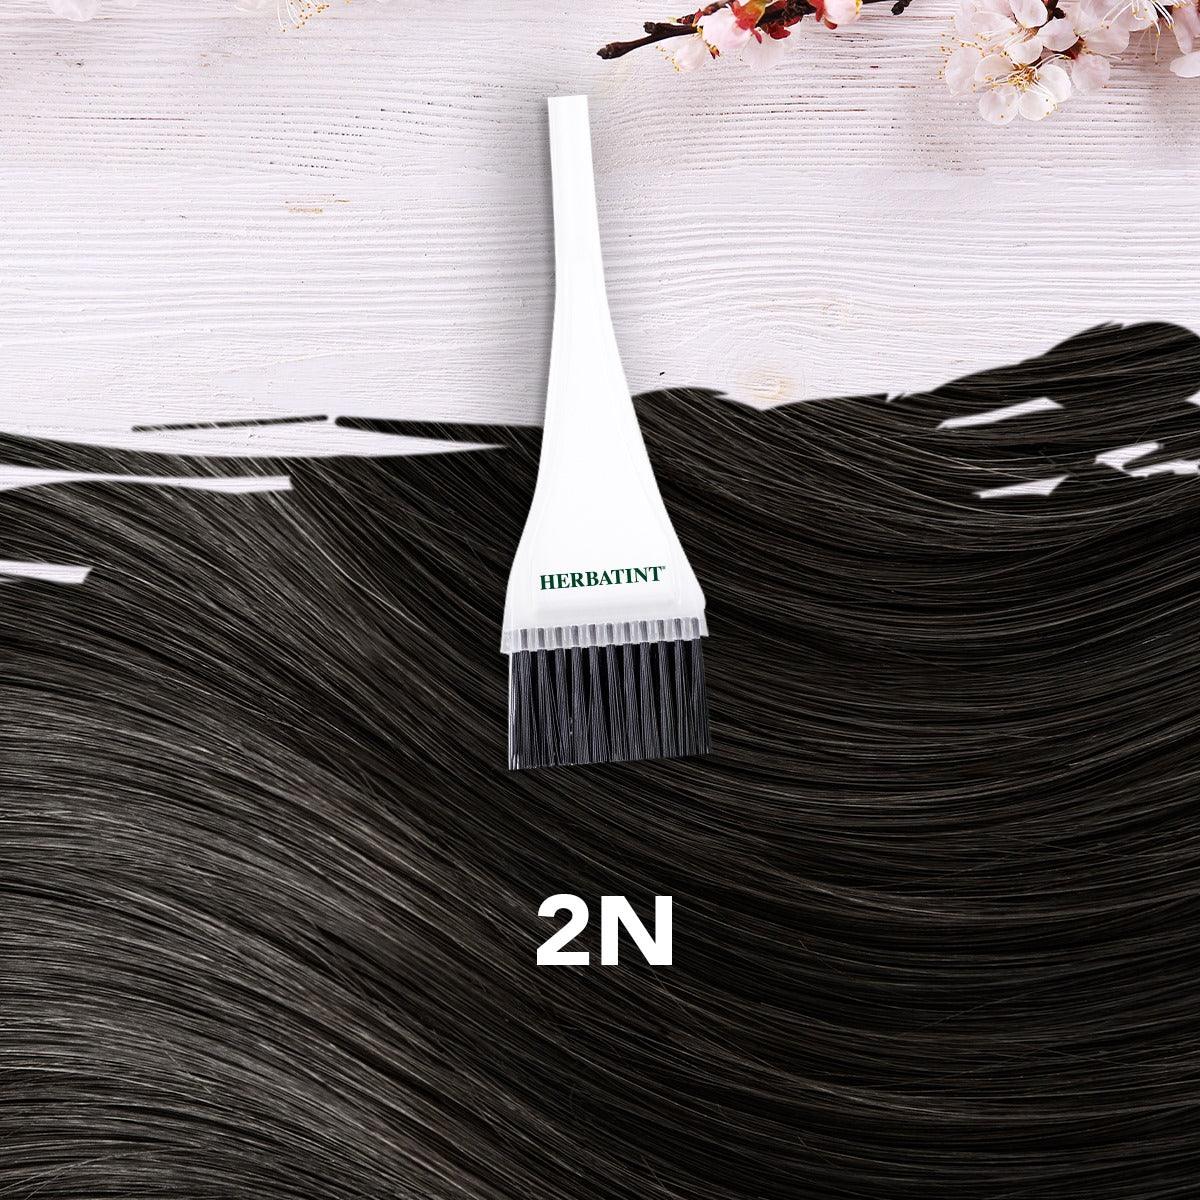 צבע טבעי לשיער גוון חום 2N | הרבטינט - Herbatint - פריקפוא